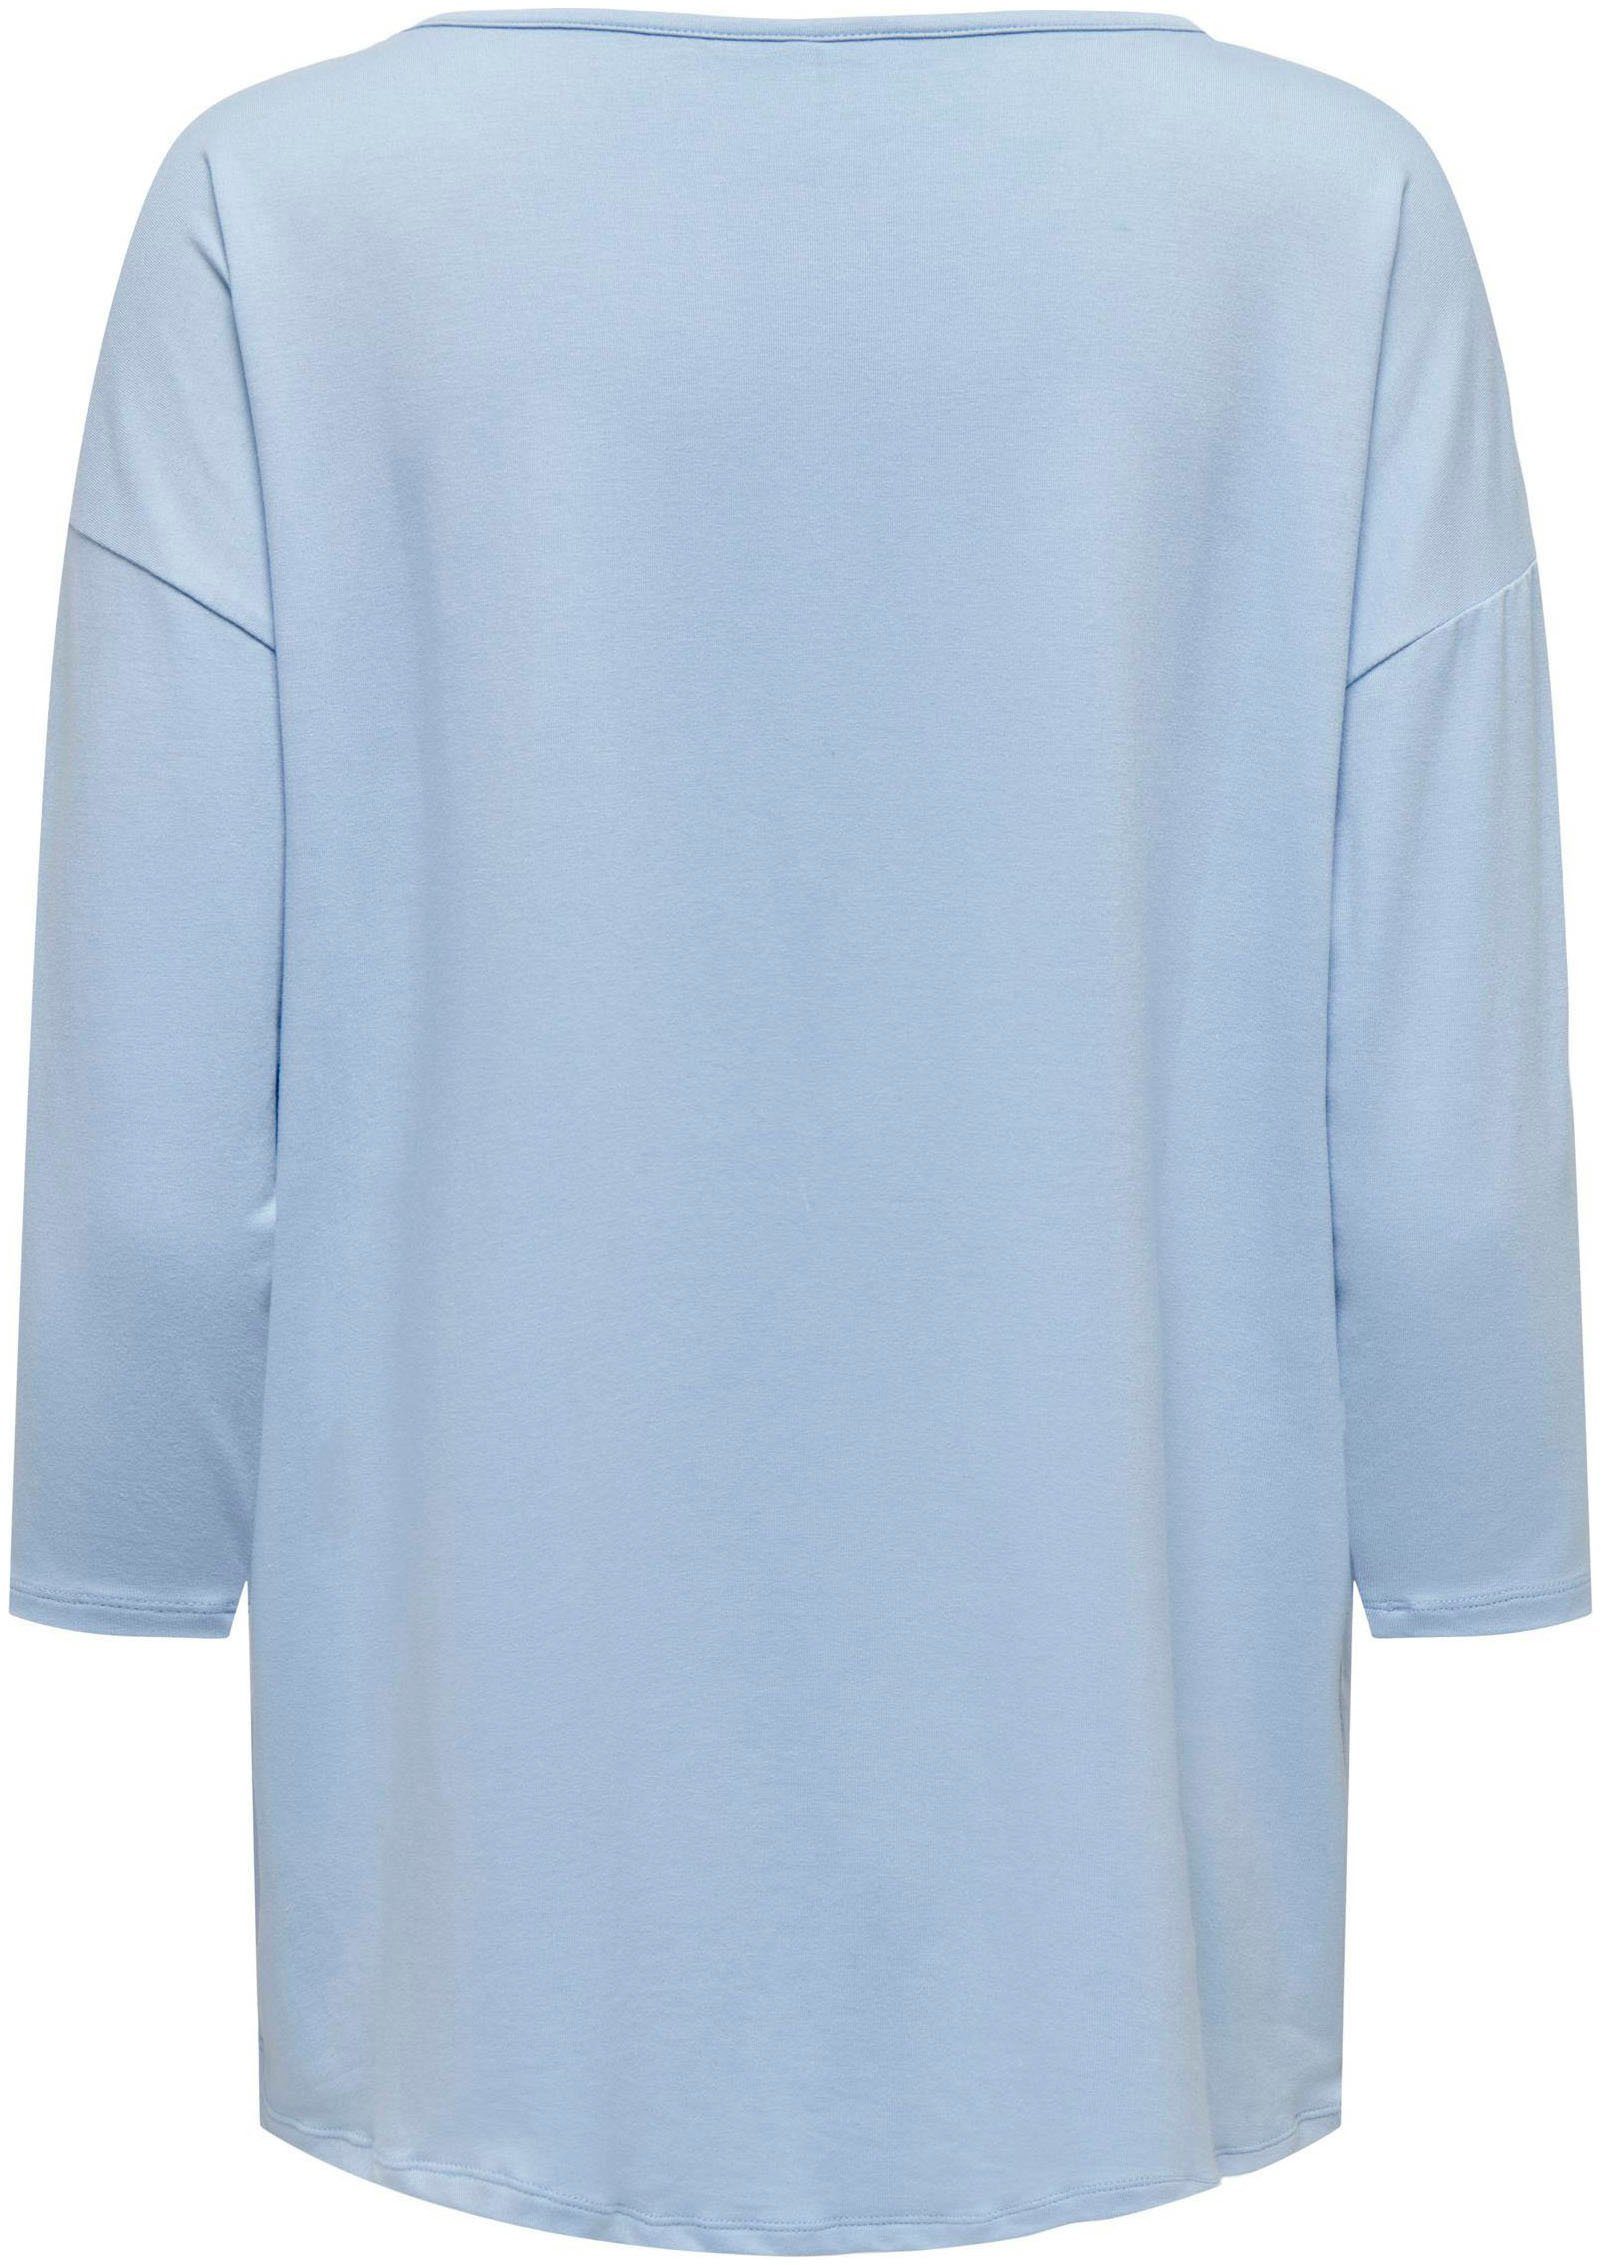 TAPE CS ONLMOSTER TOP 3/4-Arm-Shirt ONLY Detail:Melange Cashmere SHOULDER Blue 3/4